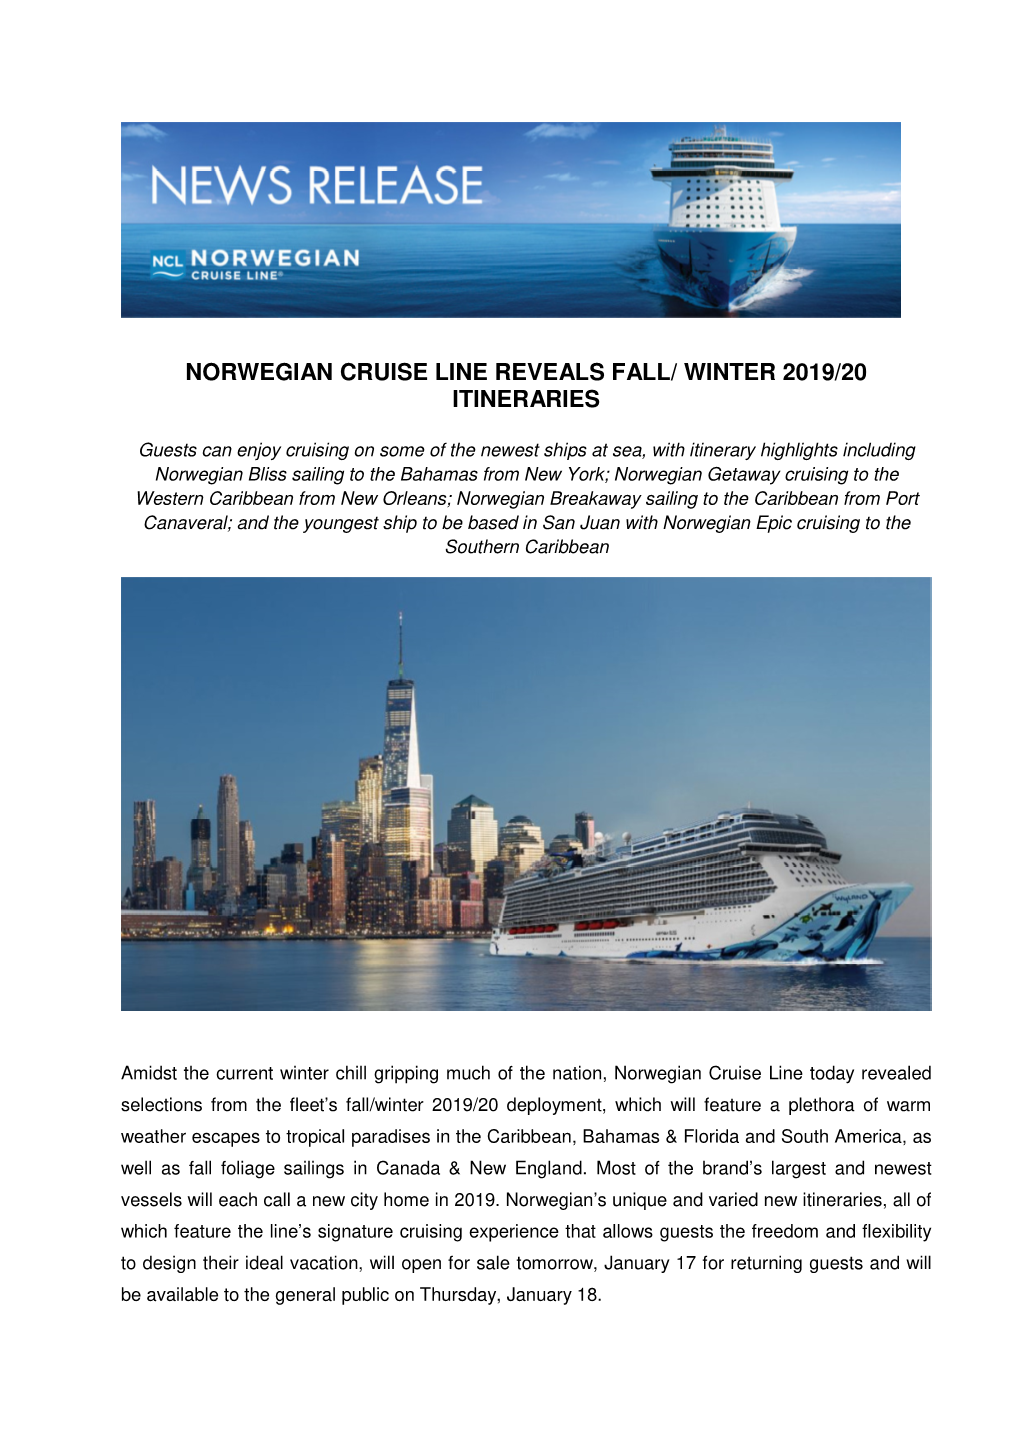 Norwegian Cruise Line Winter 2019 2020